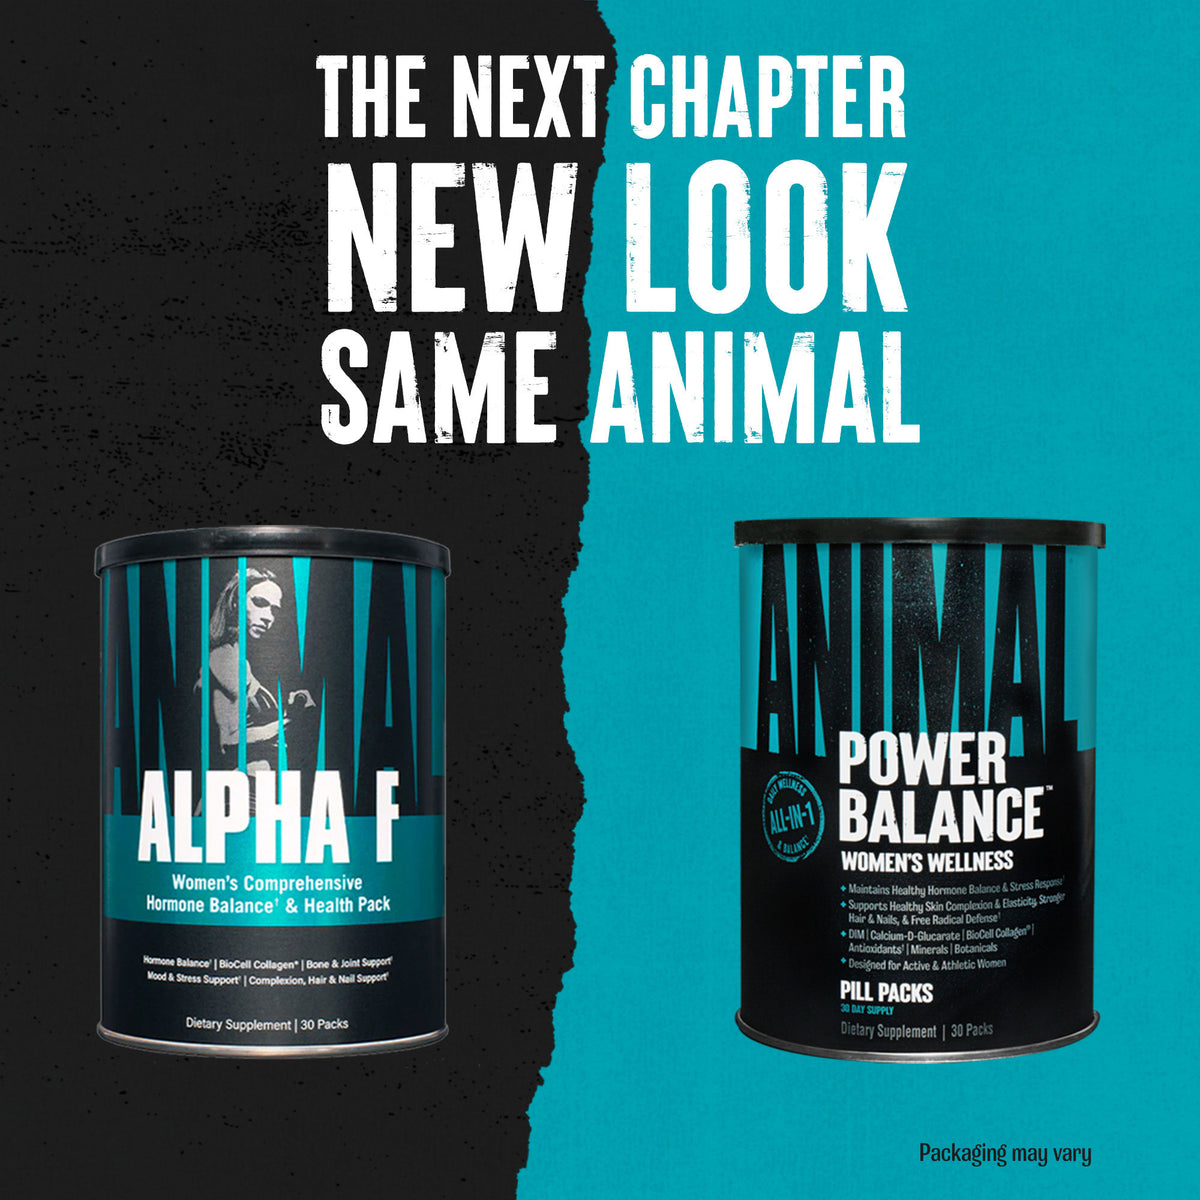 Animal Power Balance -New Chapter New Look Same Animal